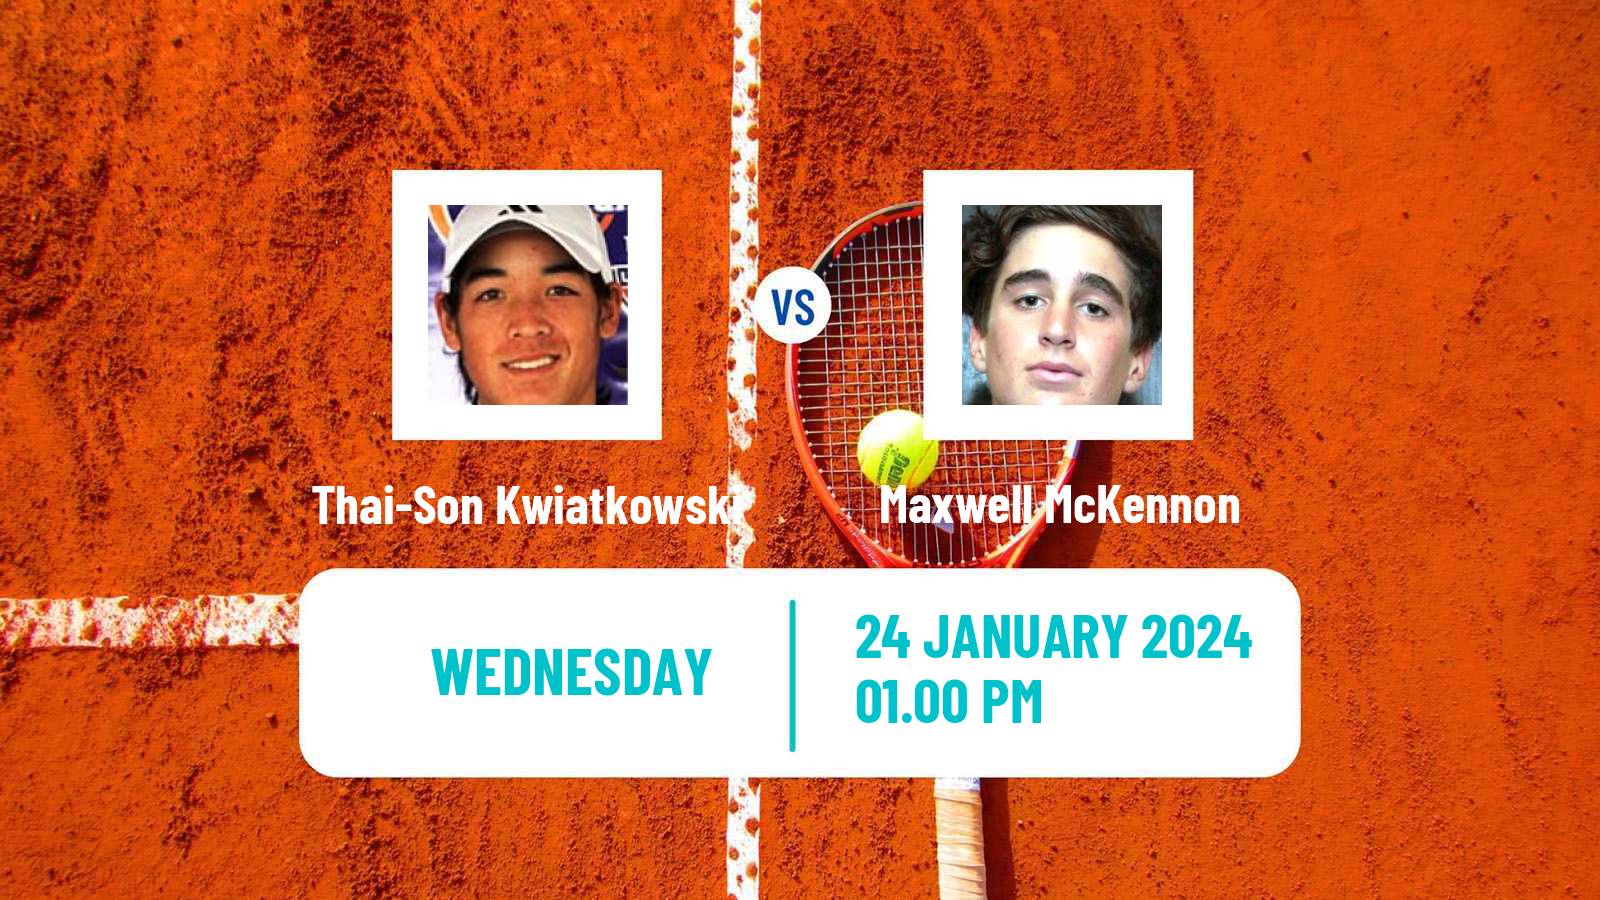 Tennis Indian Wells 2 Challenger Men Thai-Son Kwiatkowski - Maxwell McKennon